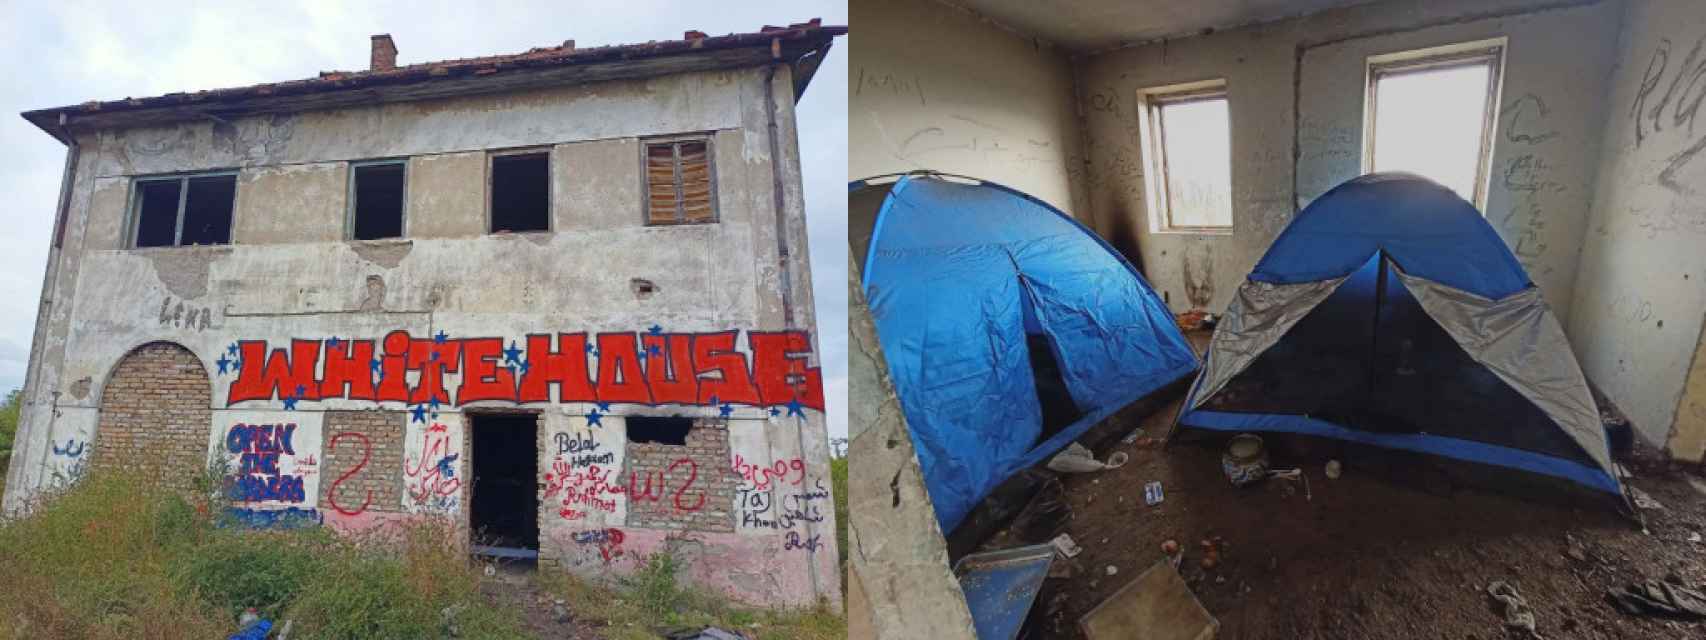 Uno de los 'squats' donde se alojan los refugiados en Serbia.